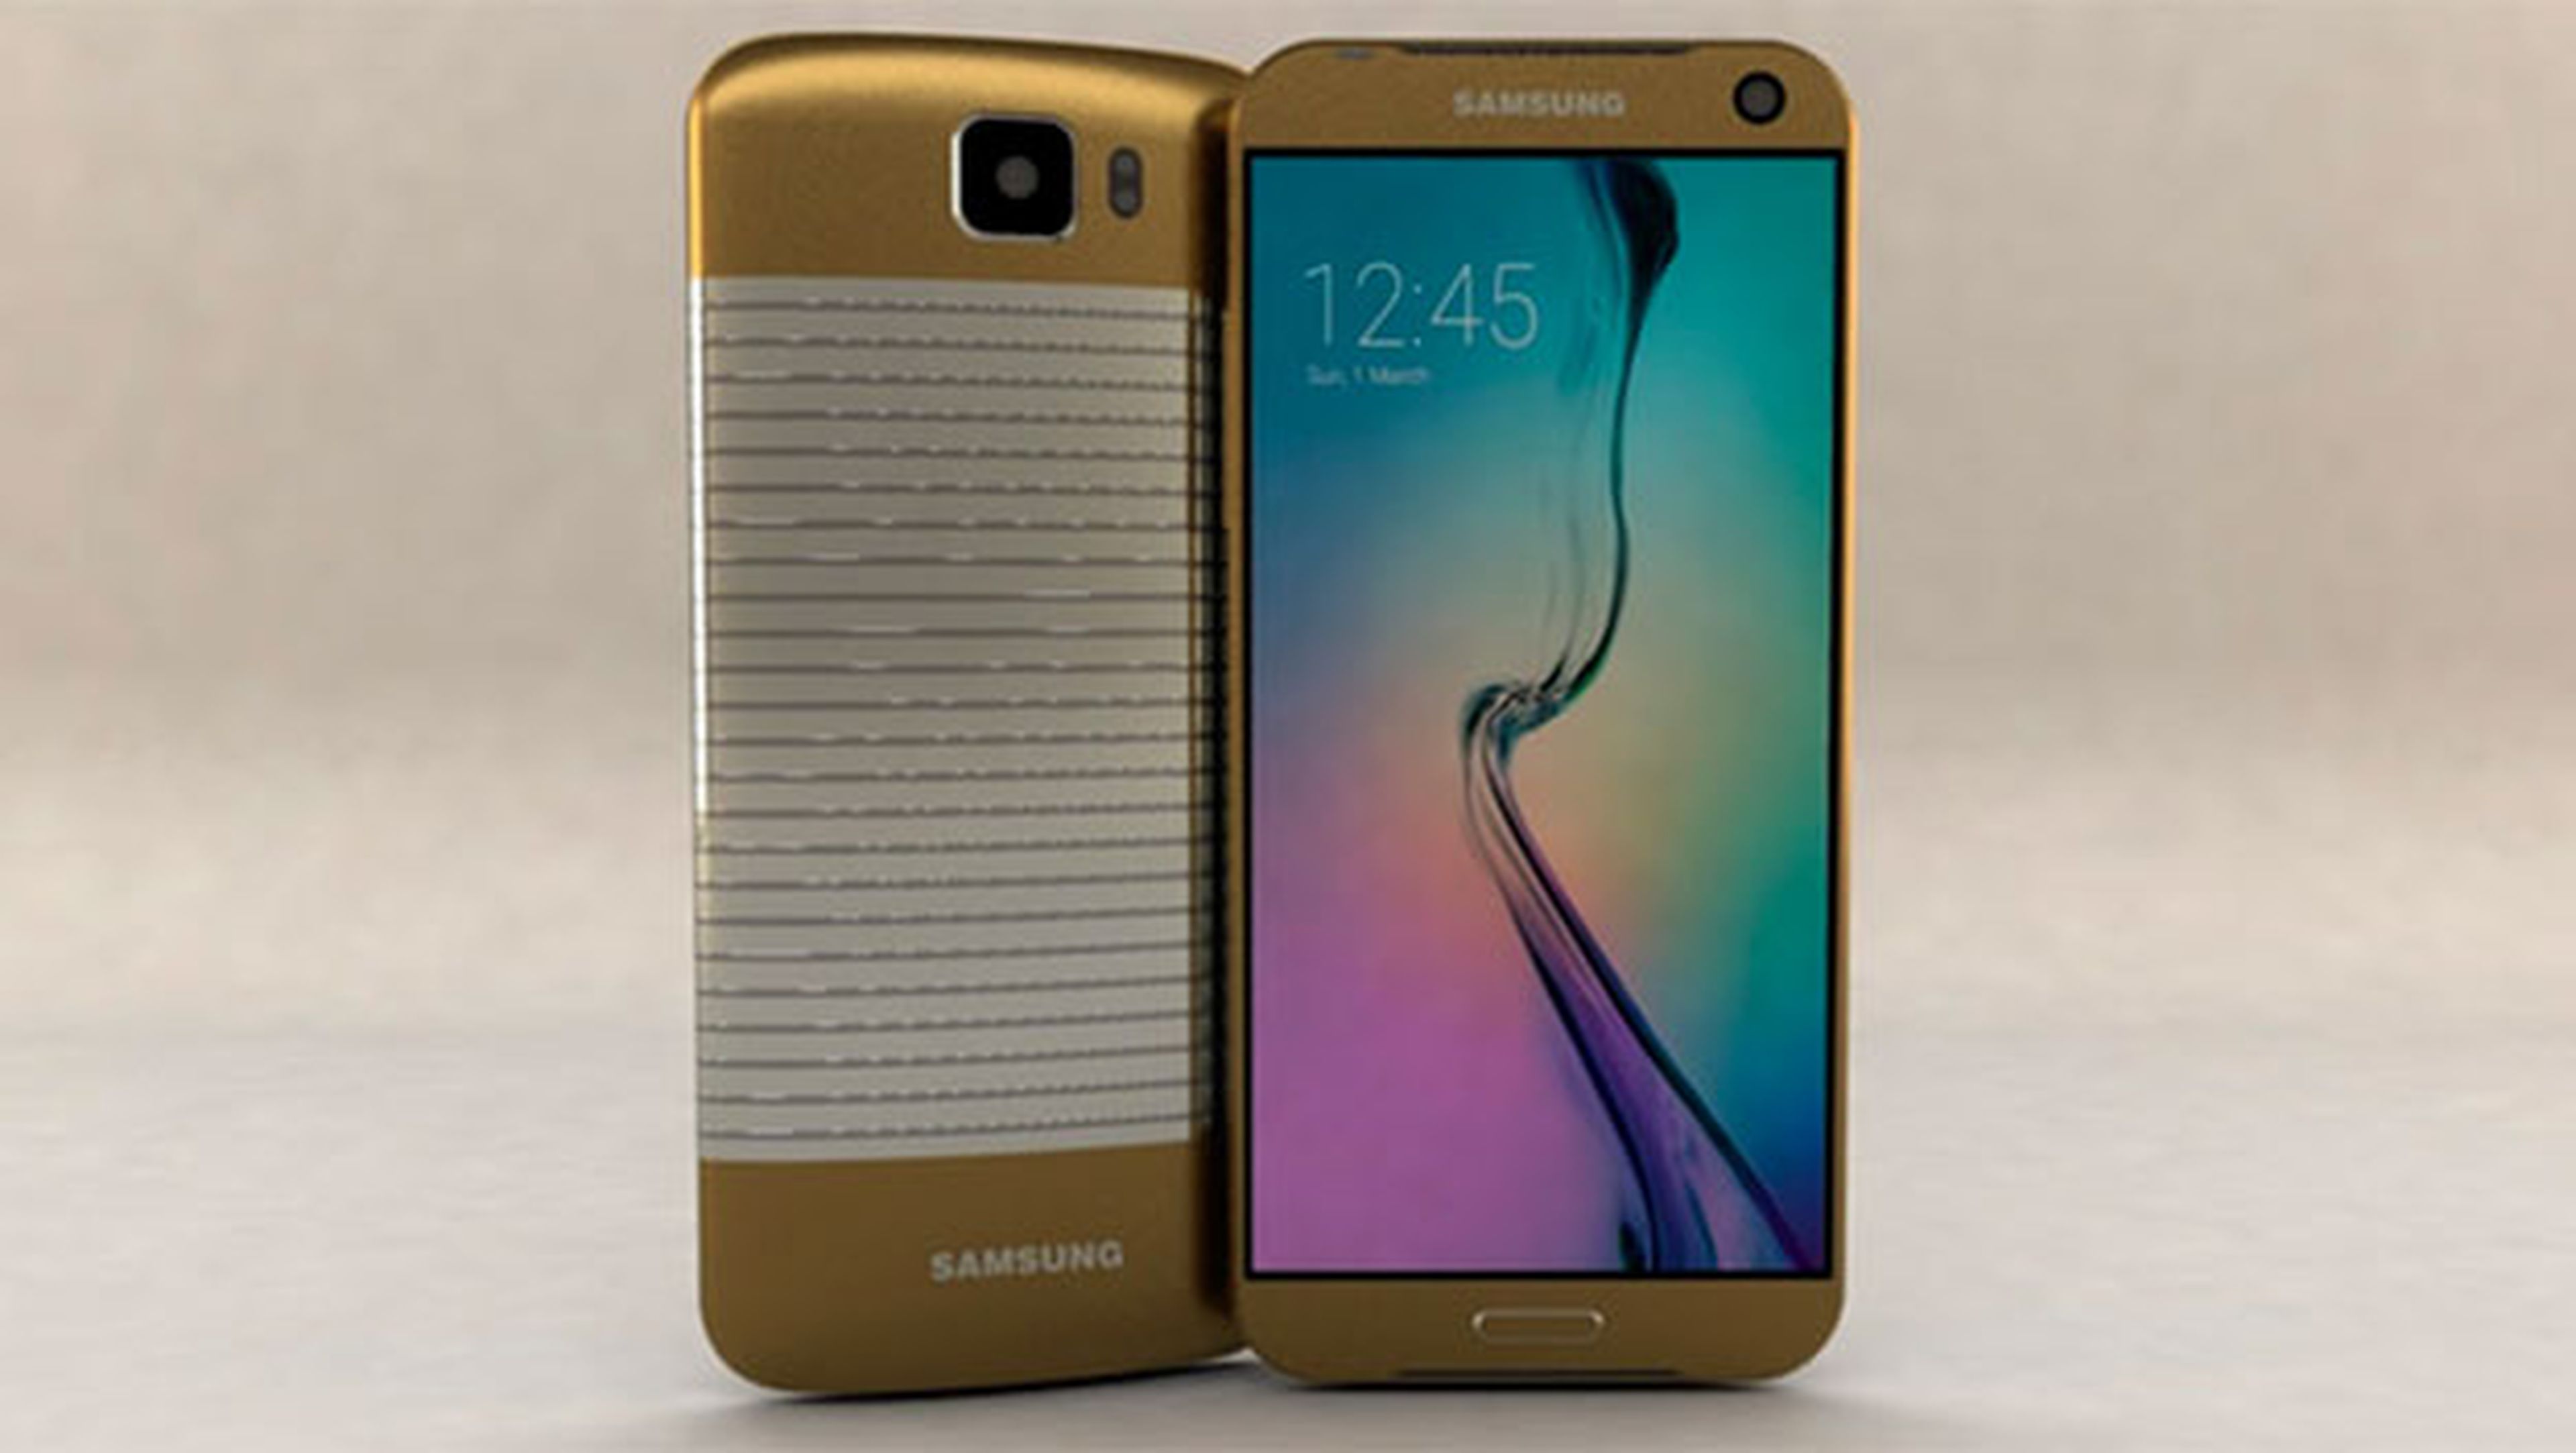 Samsung Galaxy s7, Galaxy s7 edge, galaxy s7 edge plus